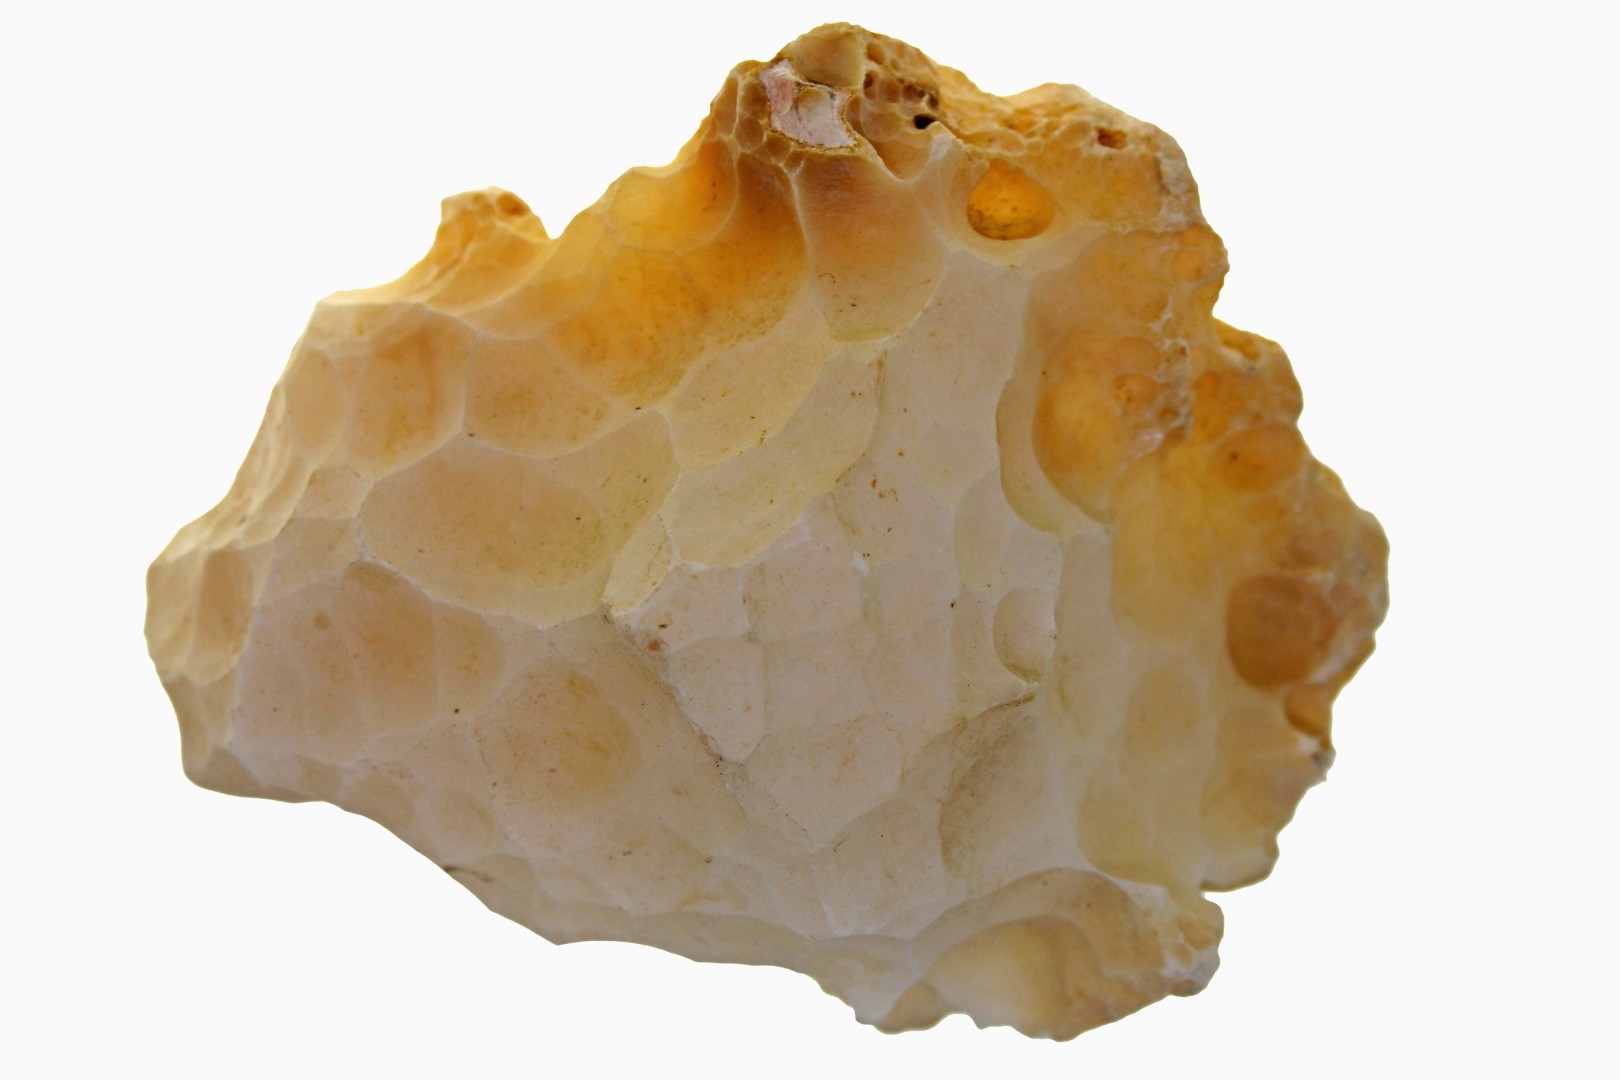 Corallo Agatizzato (Agatized Coral)